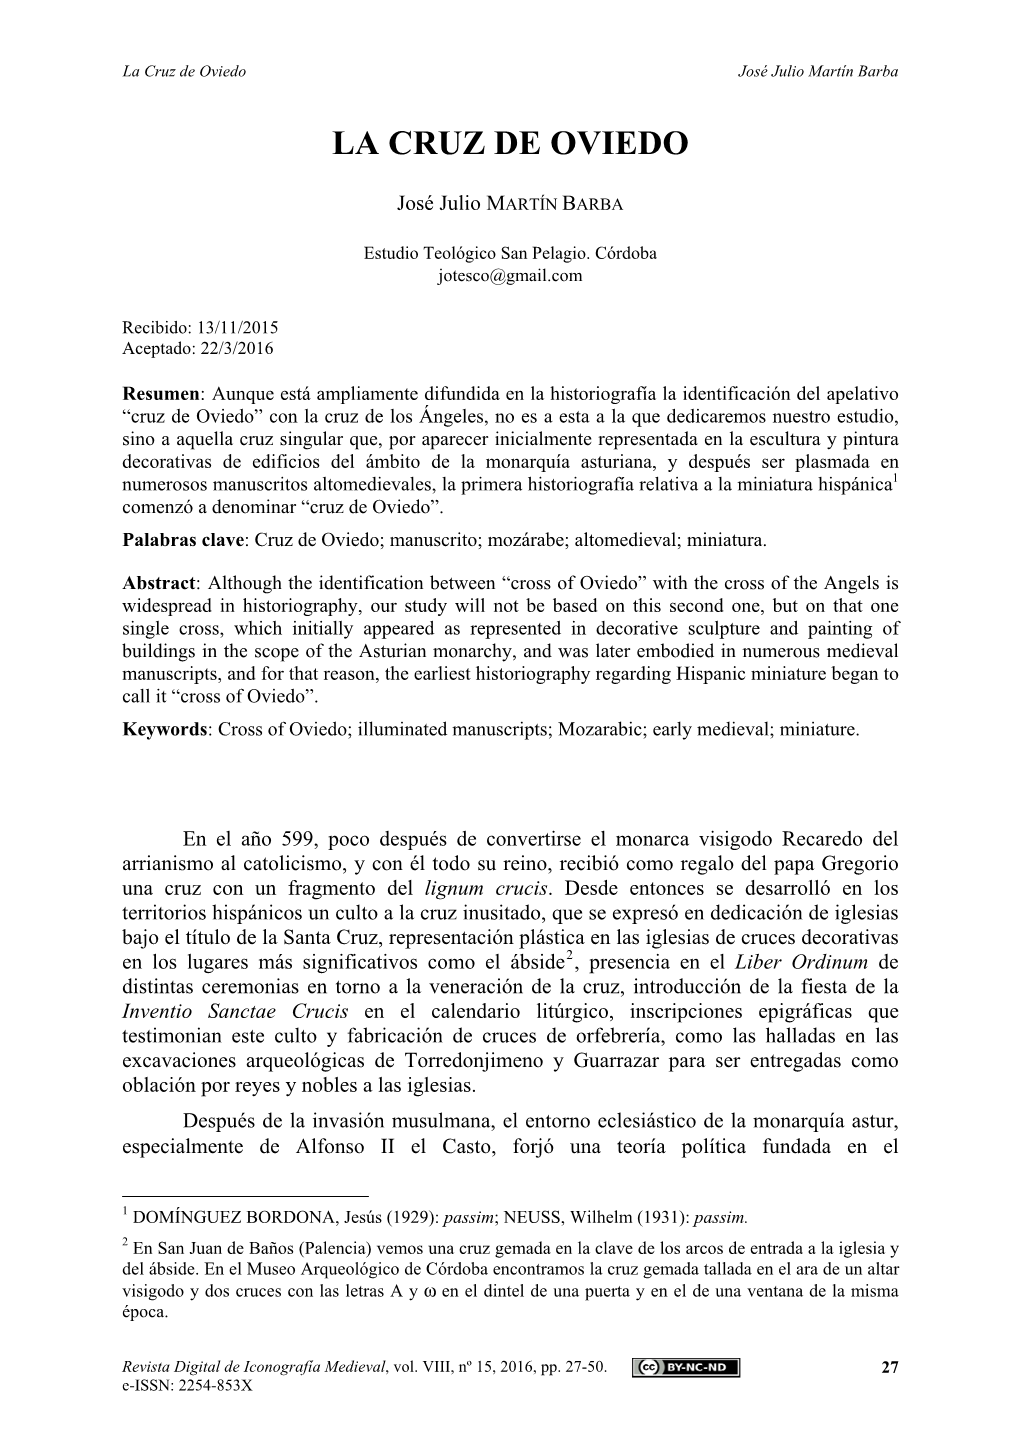 "La Cruz De Oviedo", Revista Digital De Iconografía Medieval, Vol. VIII, Nº